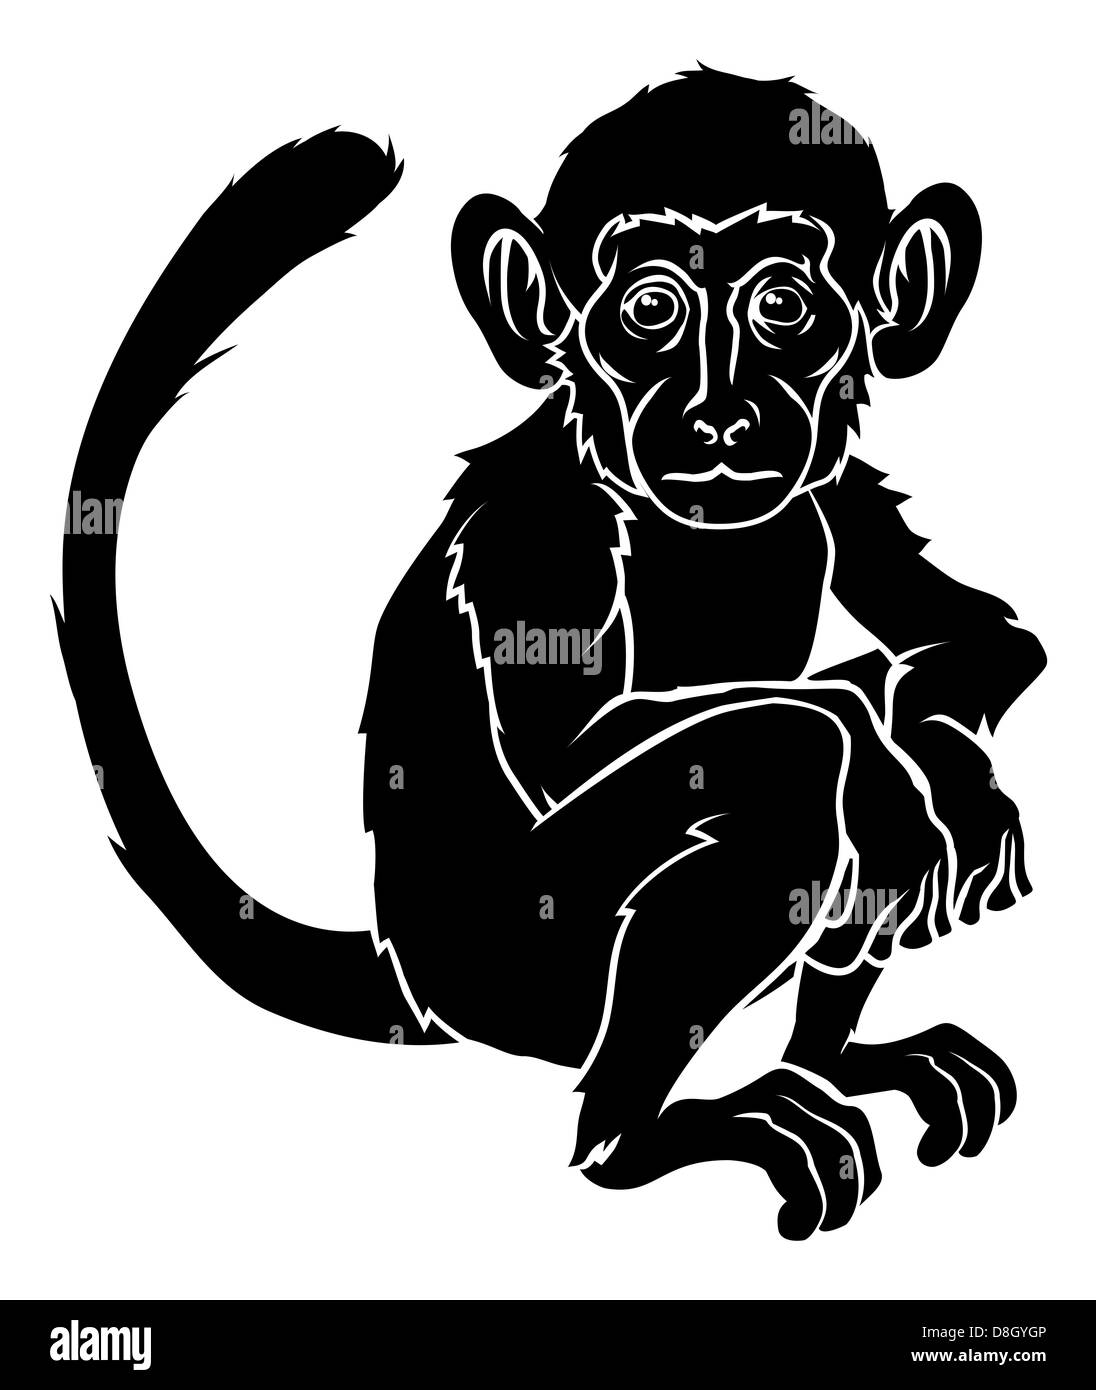 Una illustrazione di una scimmia stilizzata forse una scimmia tattoo Foto Stock